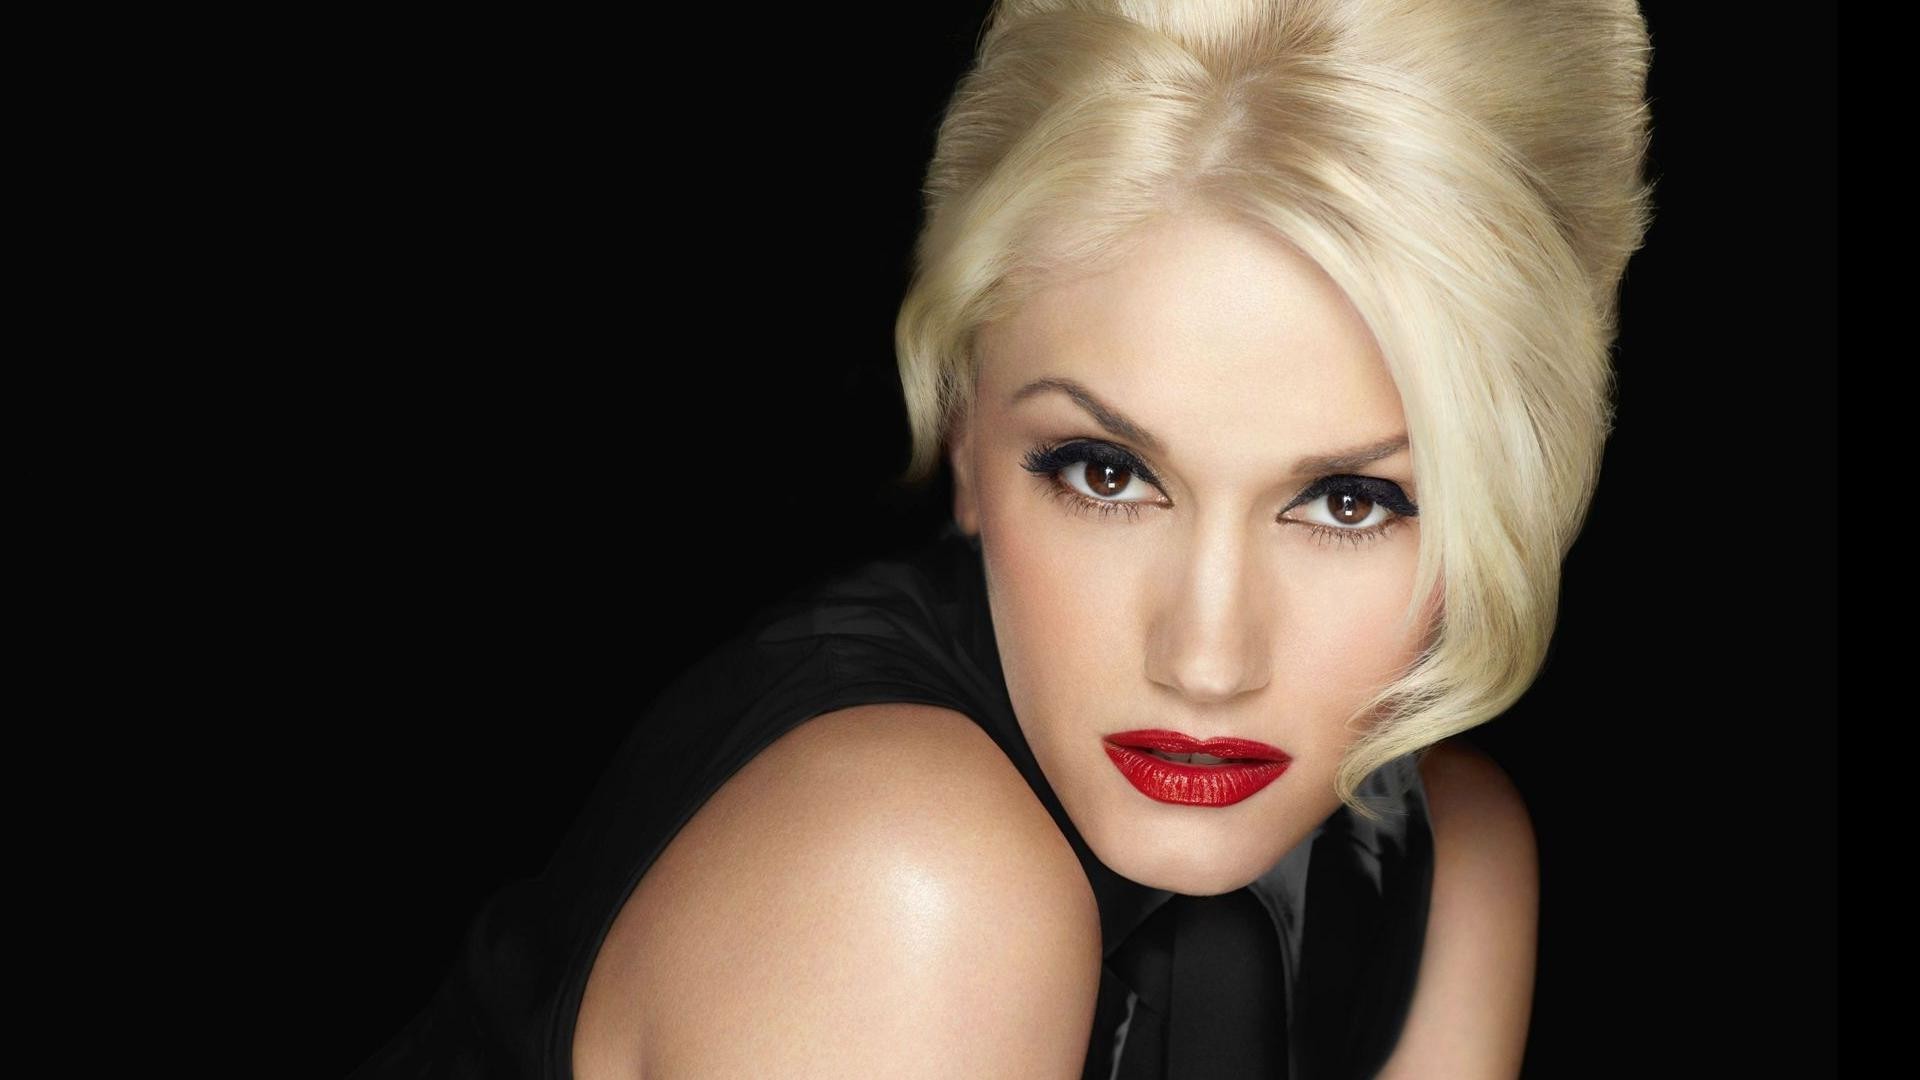 Gwen Stefani comparte un nuevo sencillo junto a Blake Shelton. Cusica Plus.